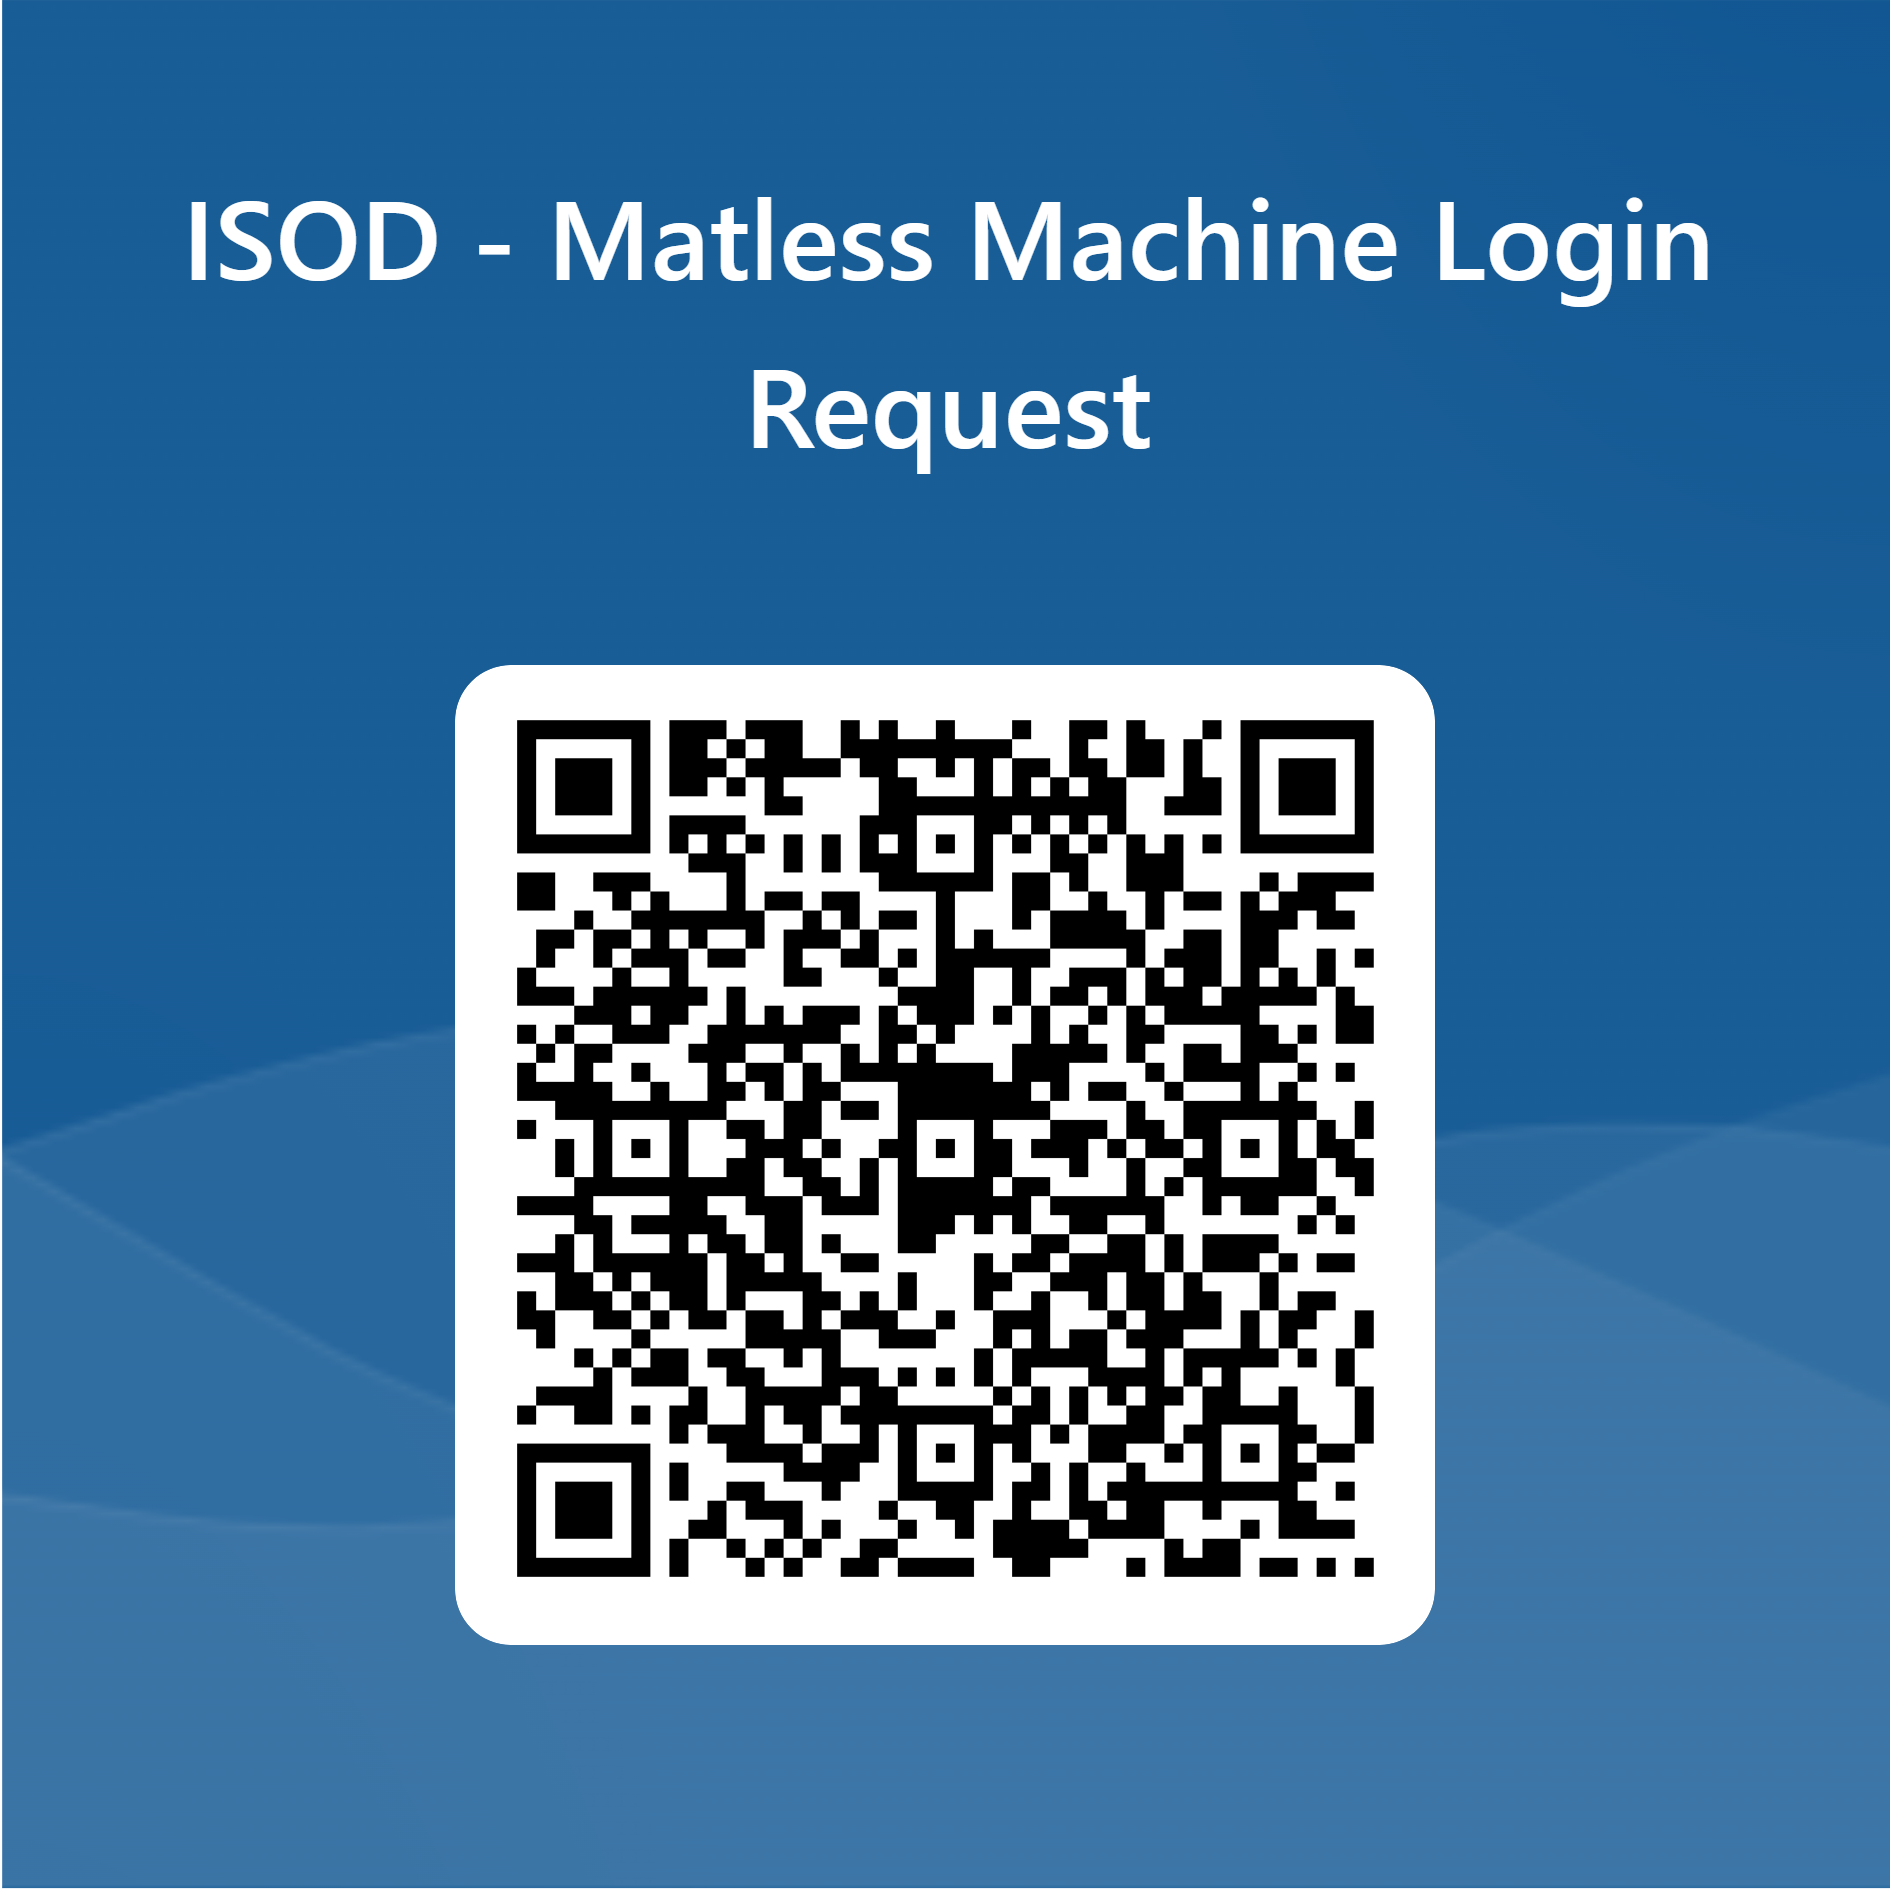 Solicitud de Acceso a Máquina Matless ISOD